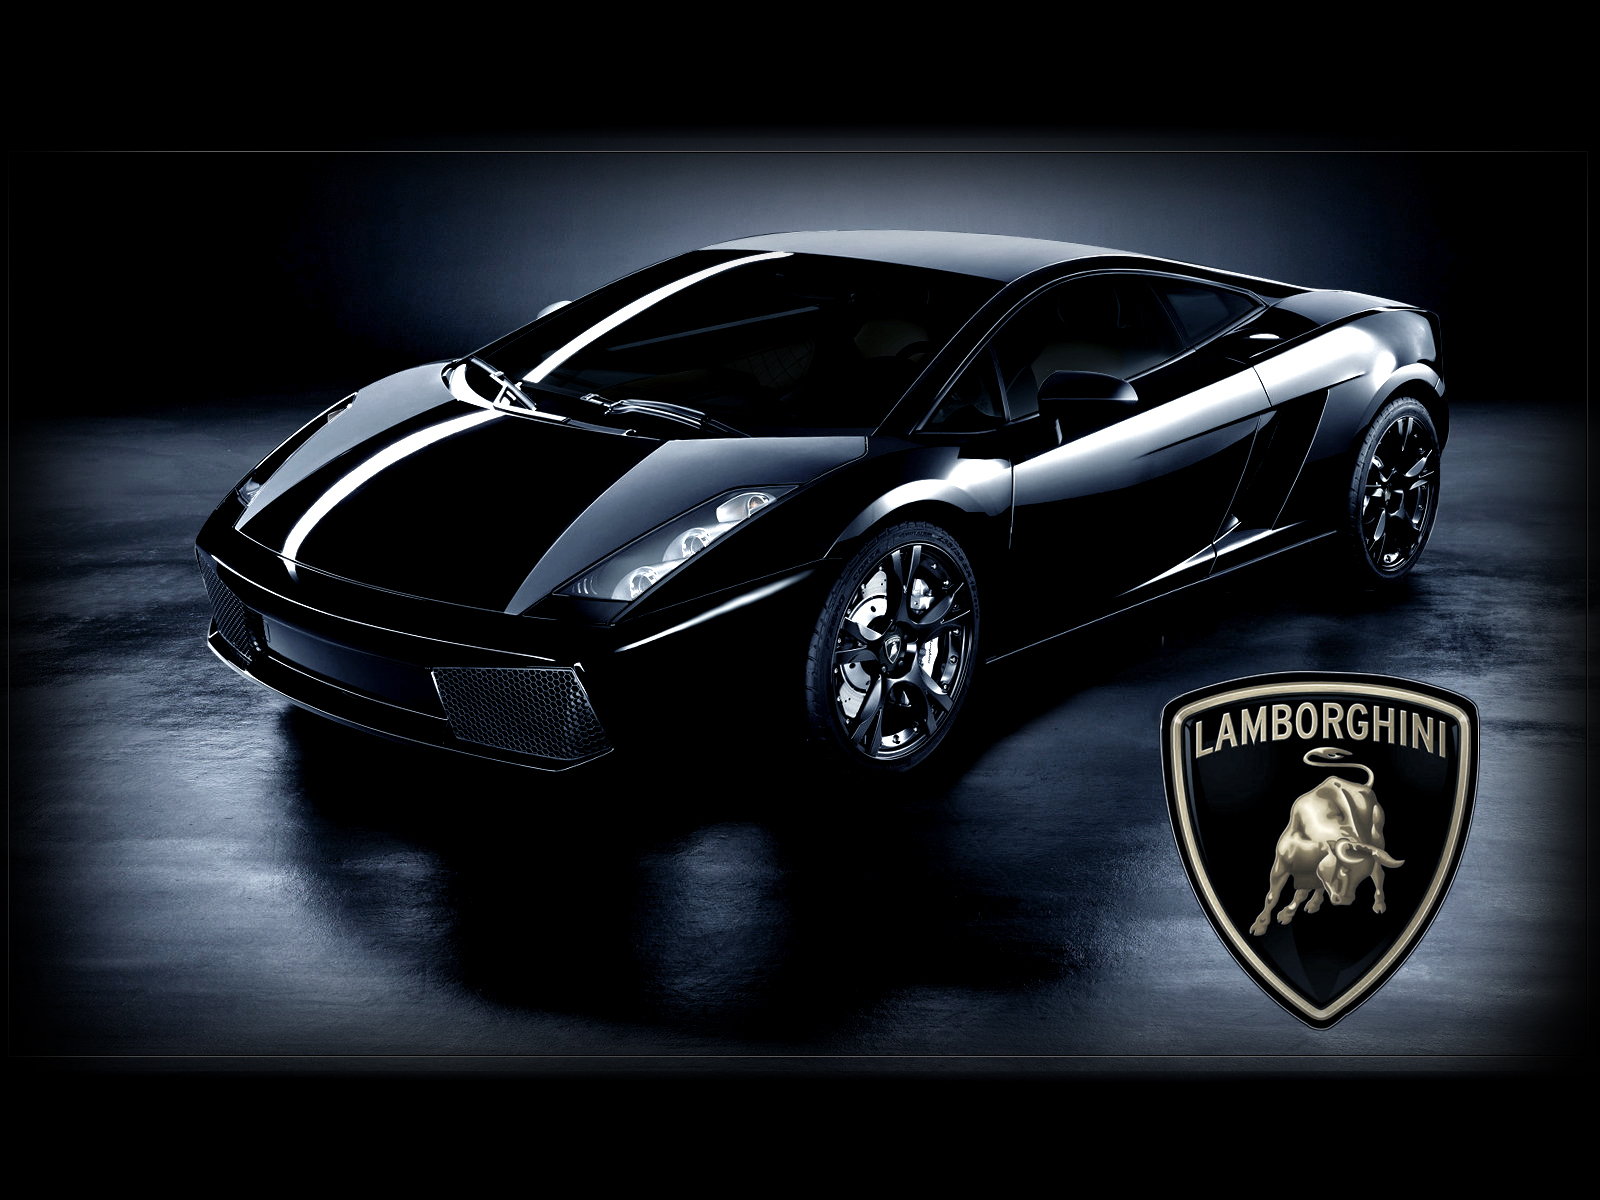 Black Lamborghini Gallardo Wallpaper Hd